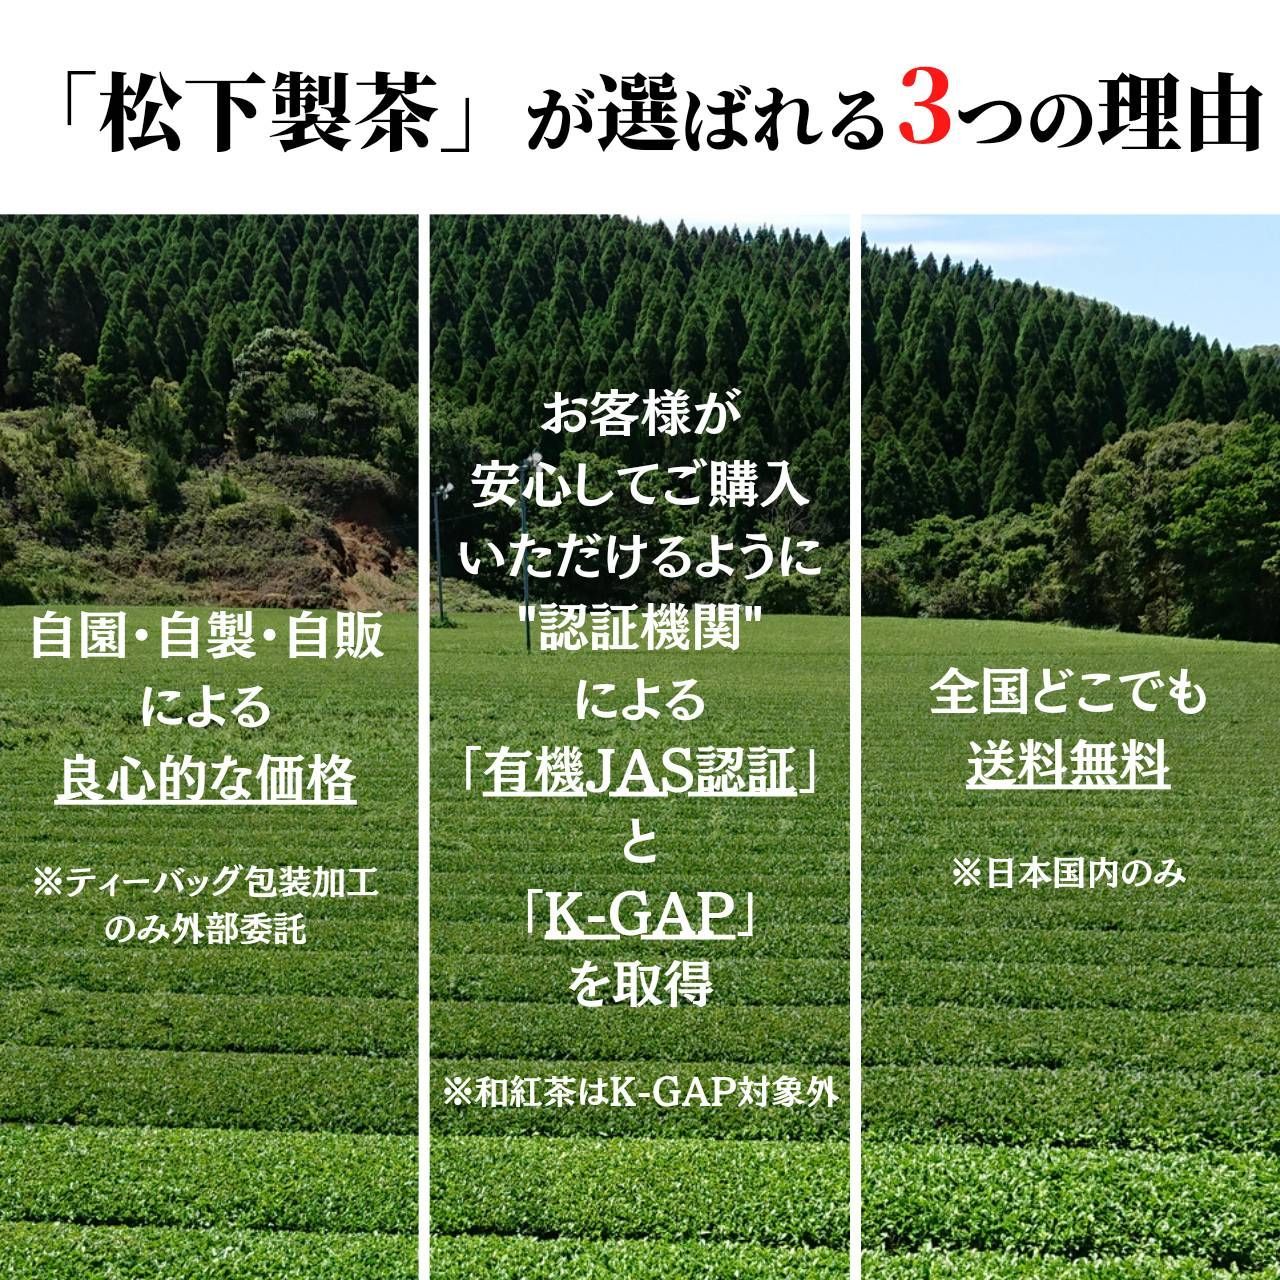 種子島の和紅茶ティーバッグ 飲み比べセット 15g(2.5g×6袋入り)×6本-2